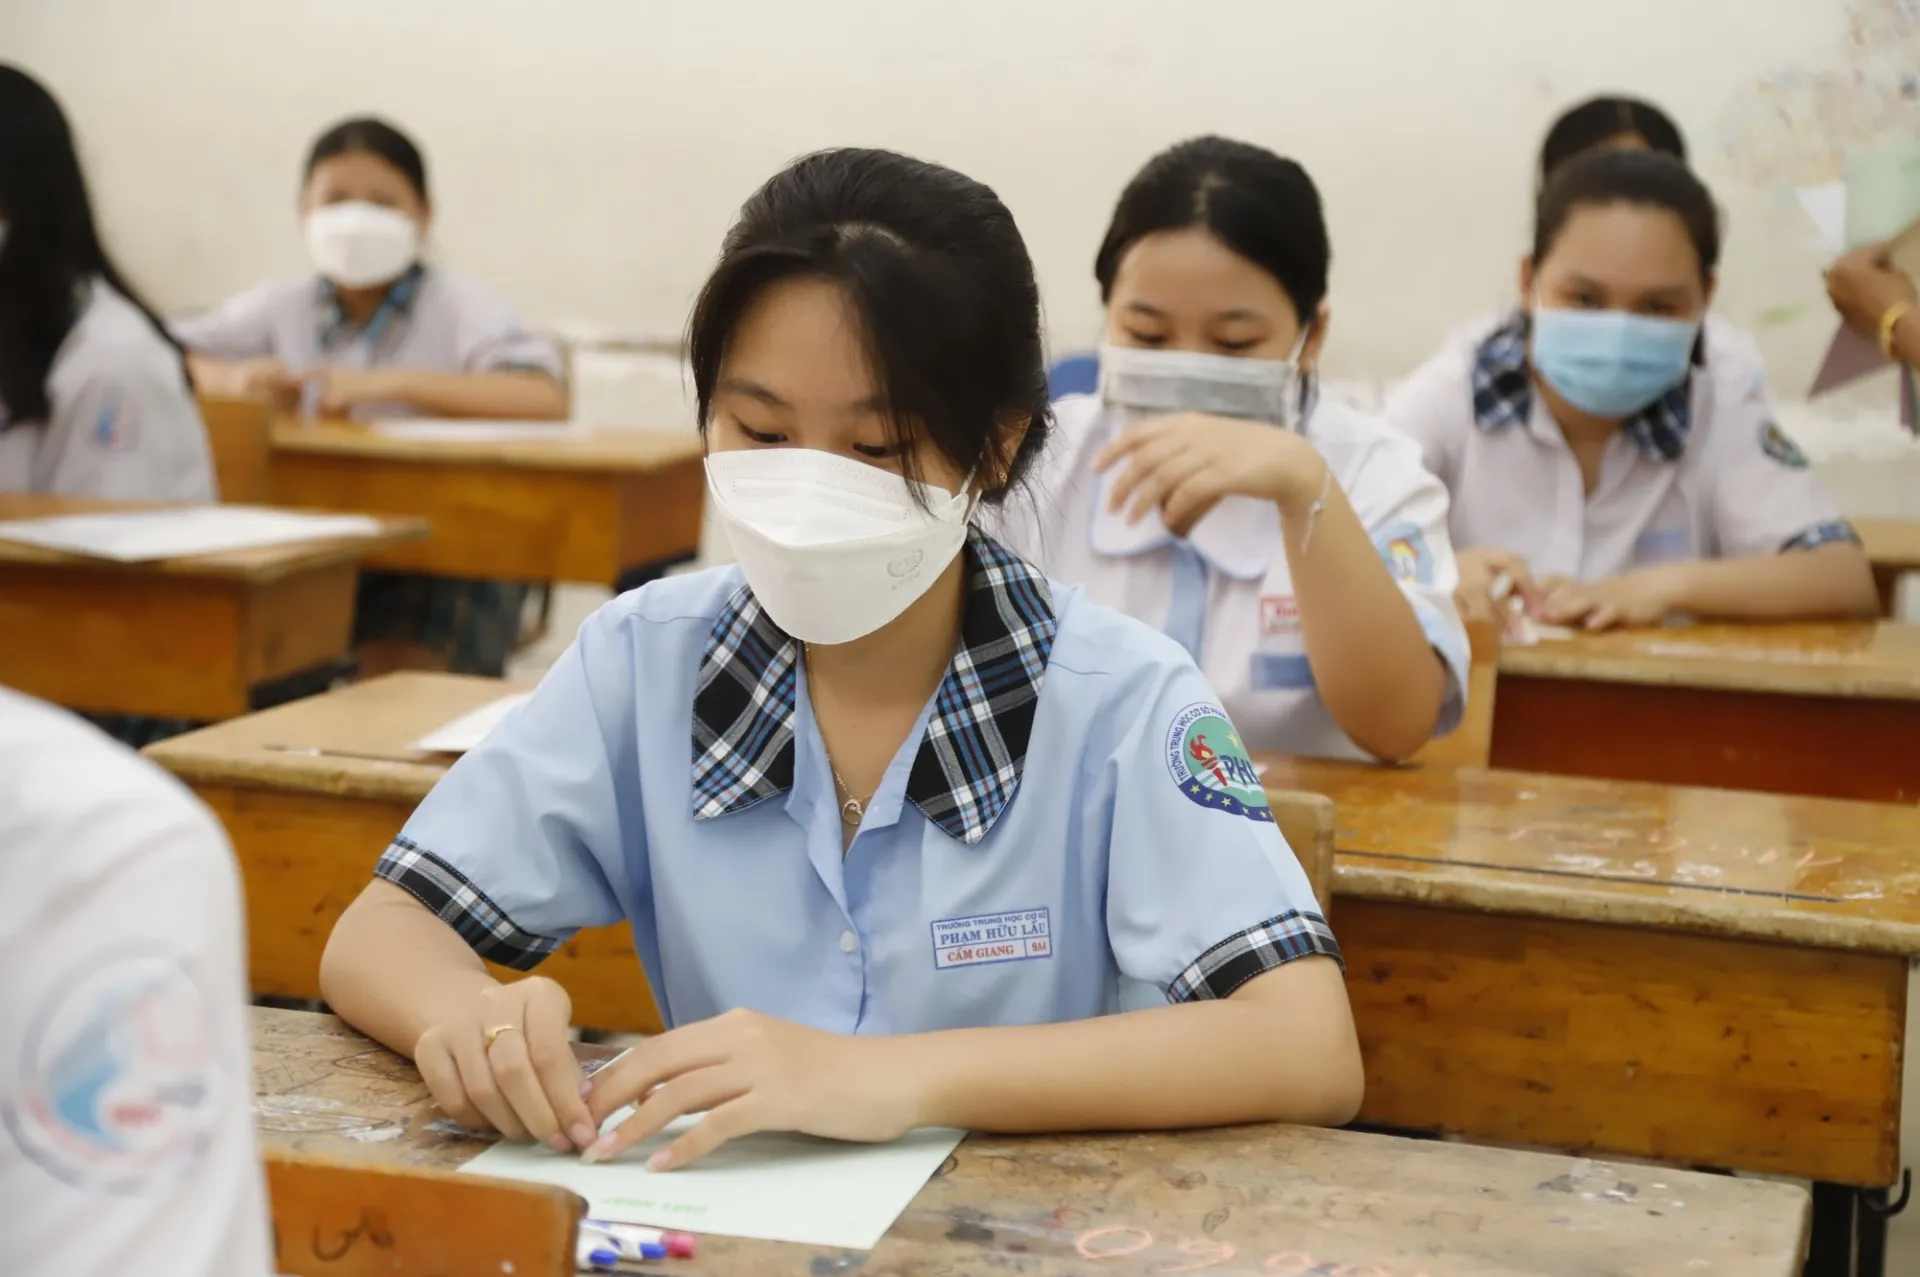 Tra cứu điểm thi tuyển sinh lớp 10 tỉnh Quảng Ngãi năm 2022 cực nhanh, cực chuẩn